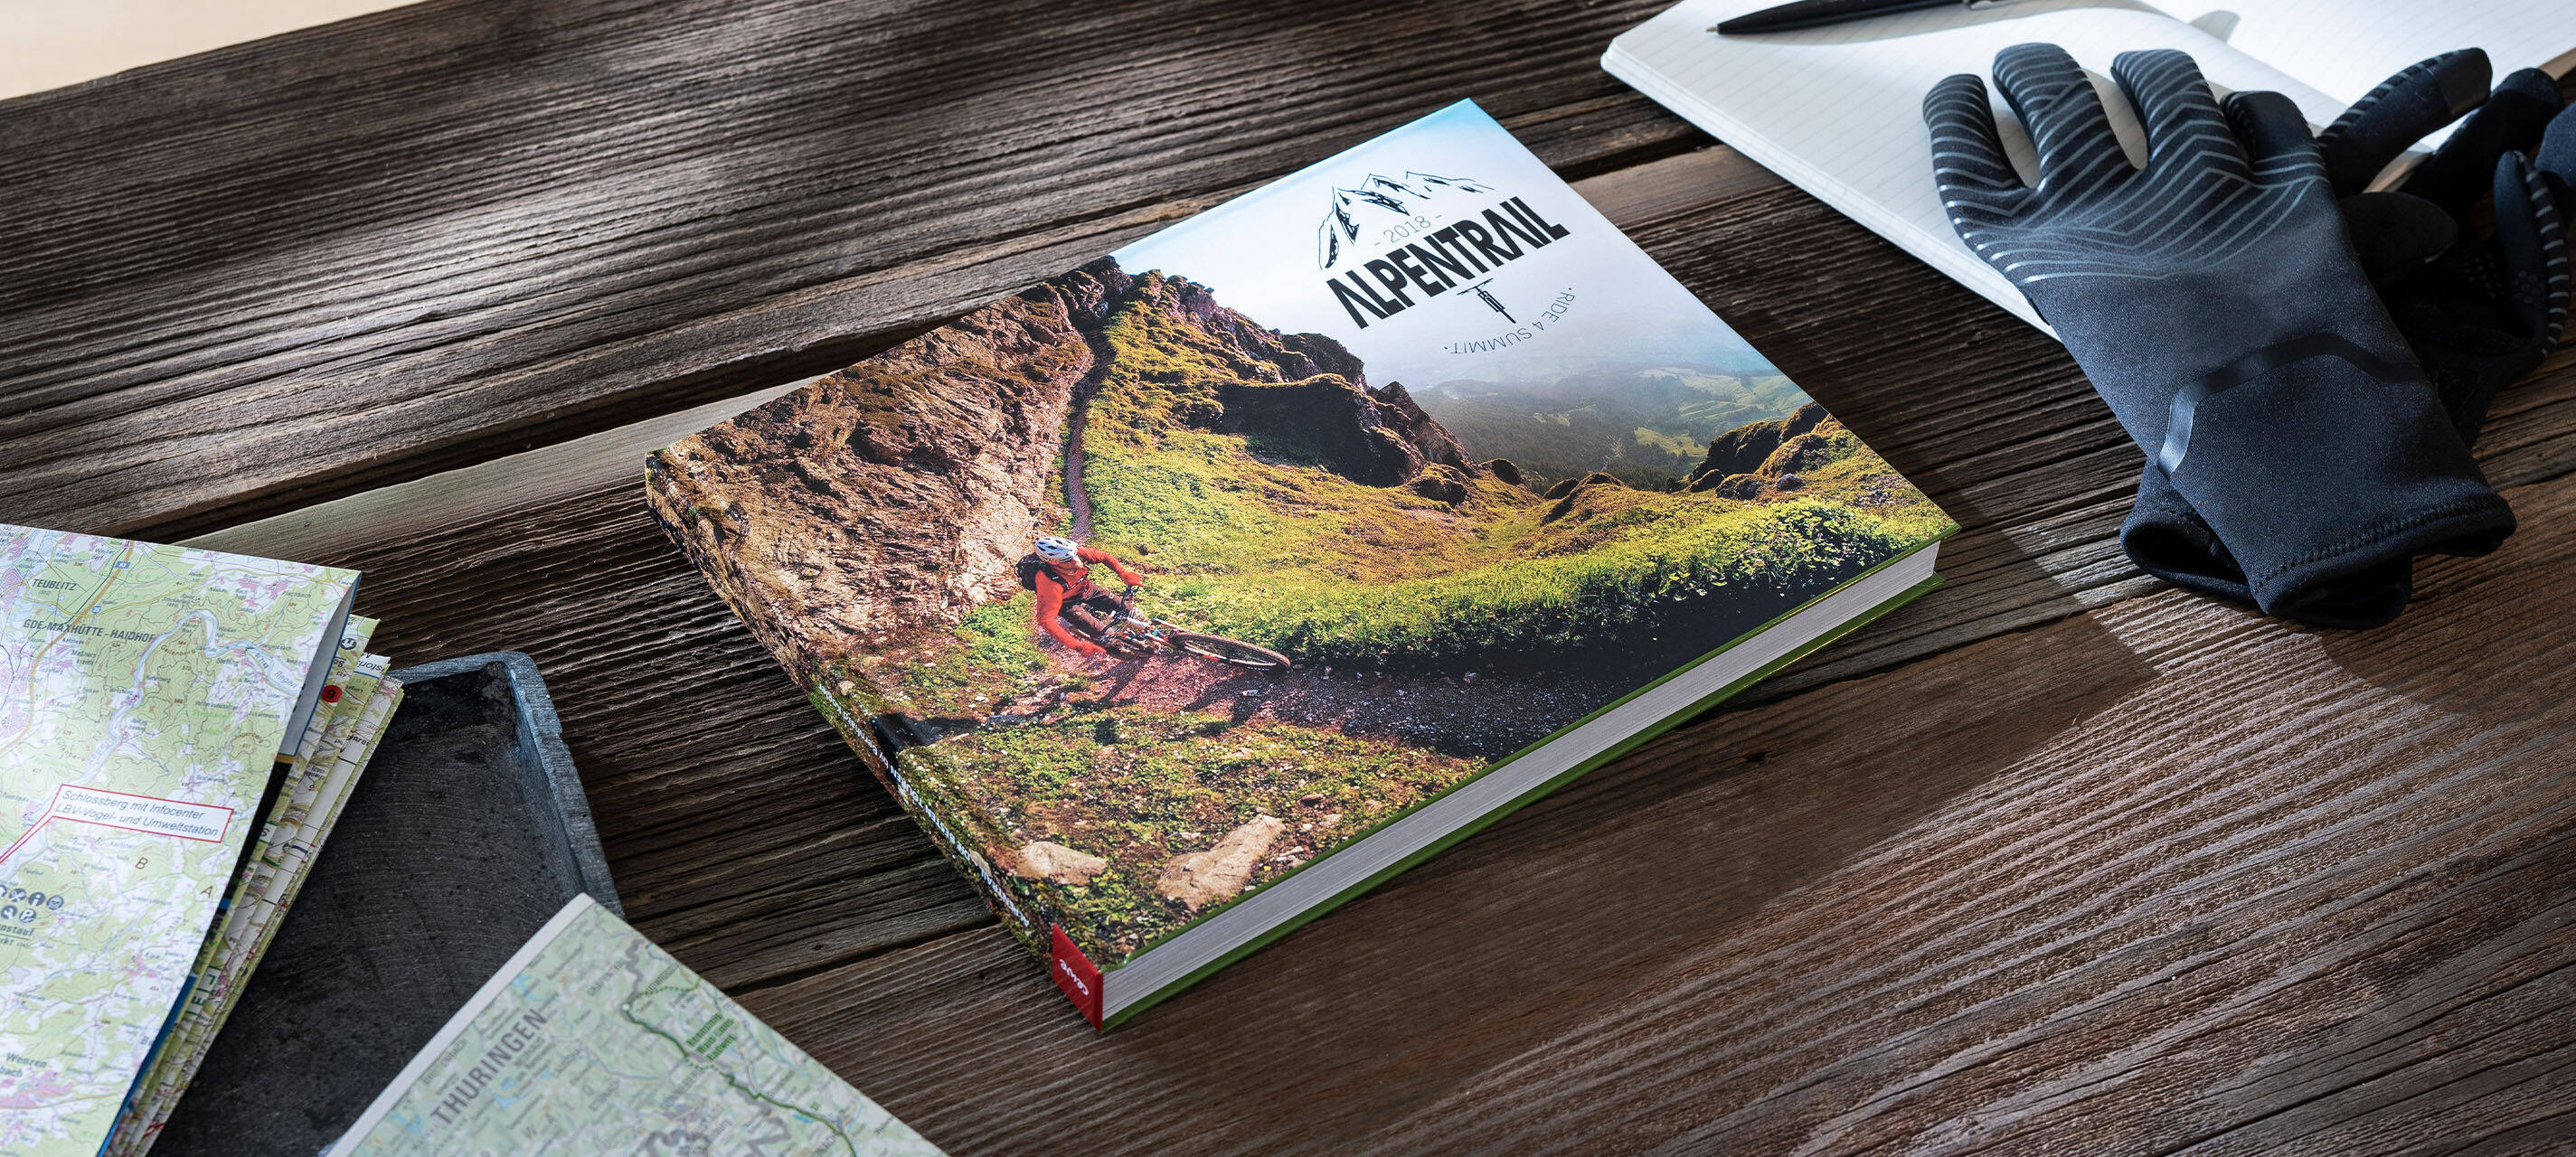 Auf einem Tisch liegt ein Fotobuch. Der Titel lautet “Alpentrail 2018”.